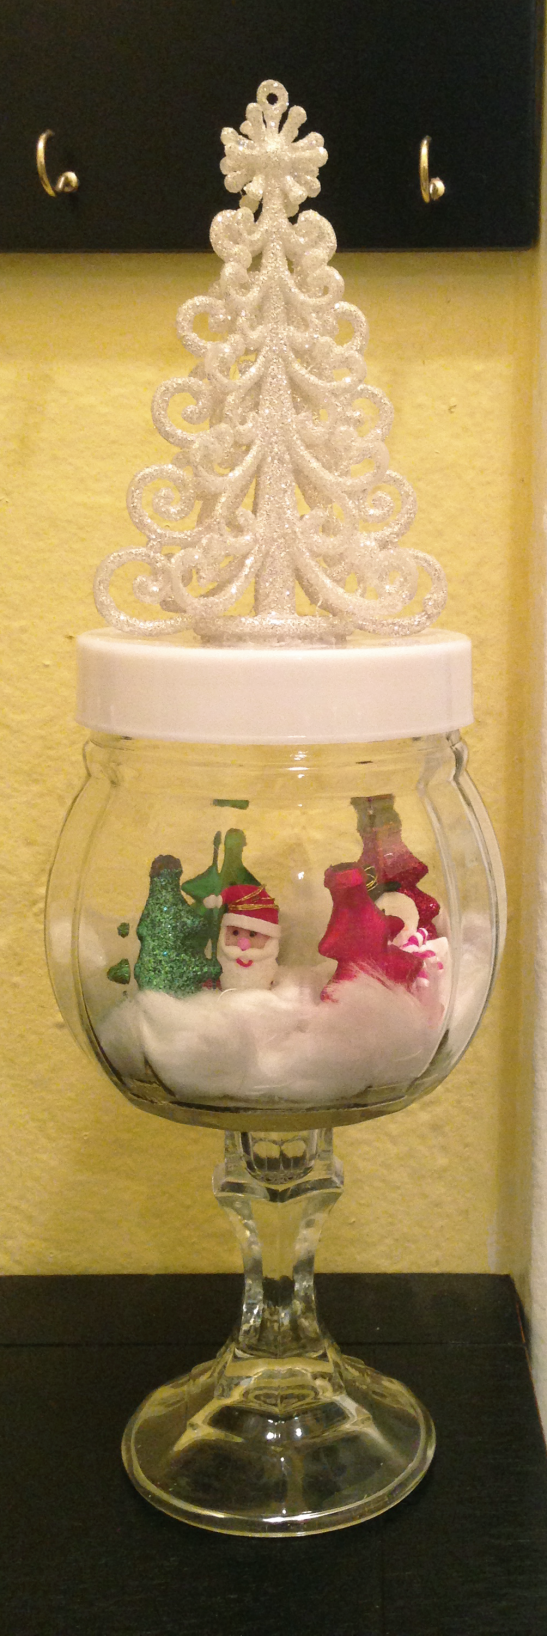 DIY Christmas snow globe jar 